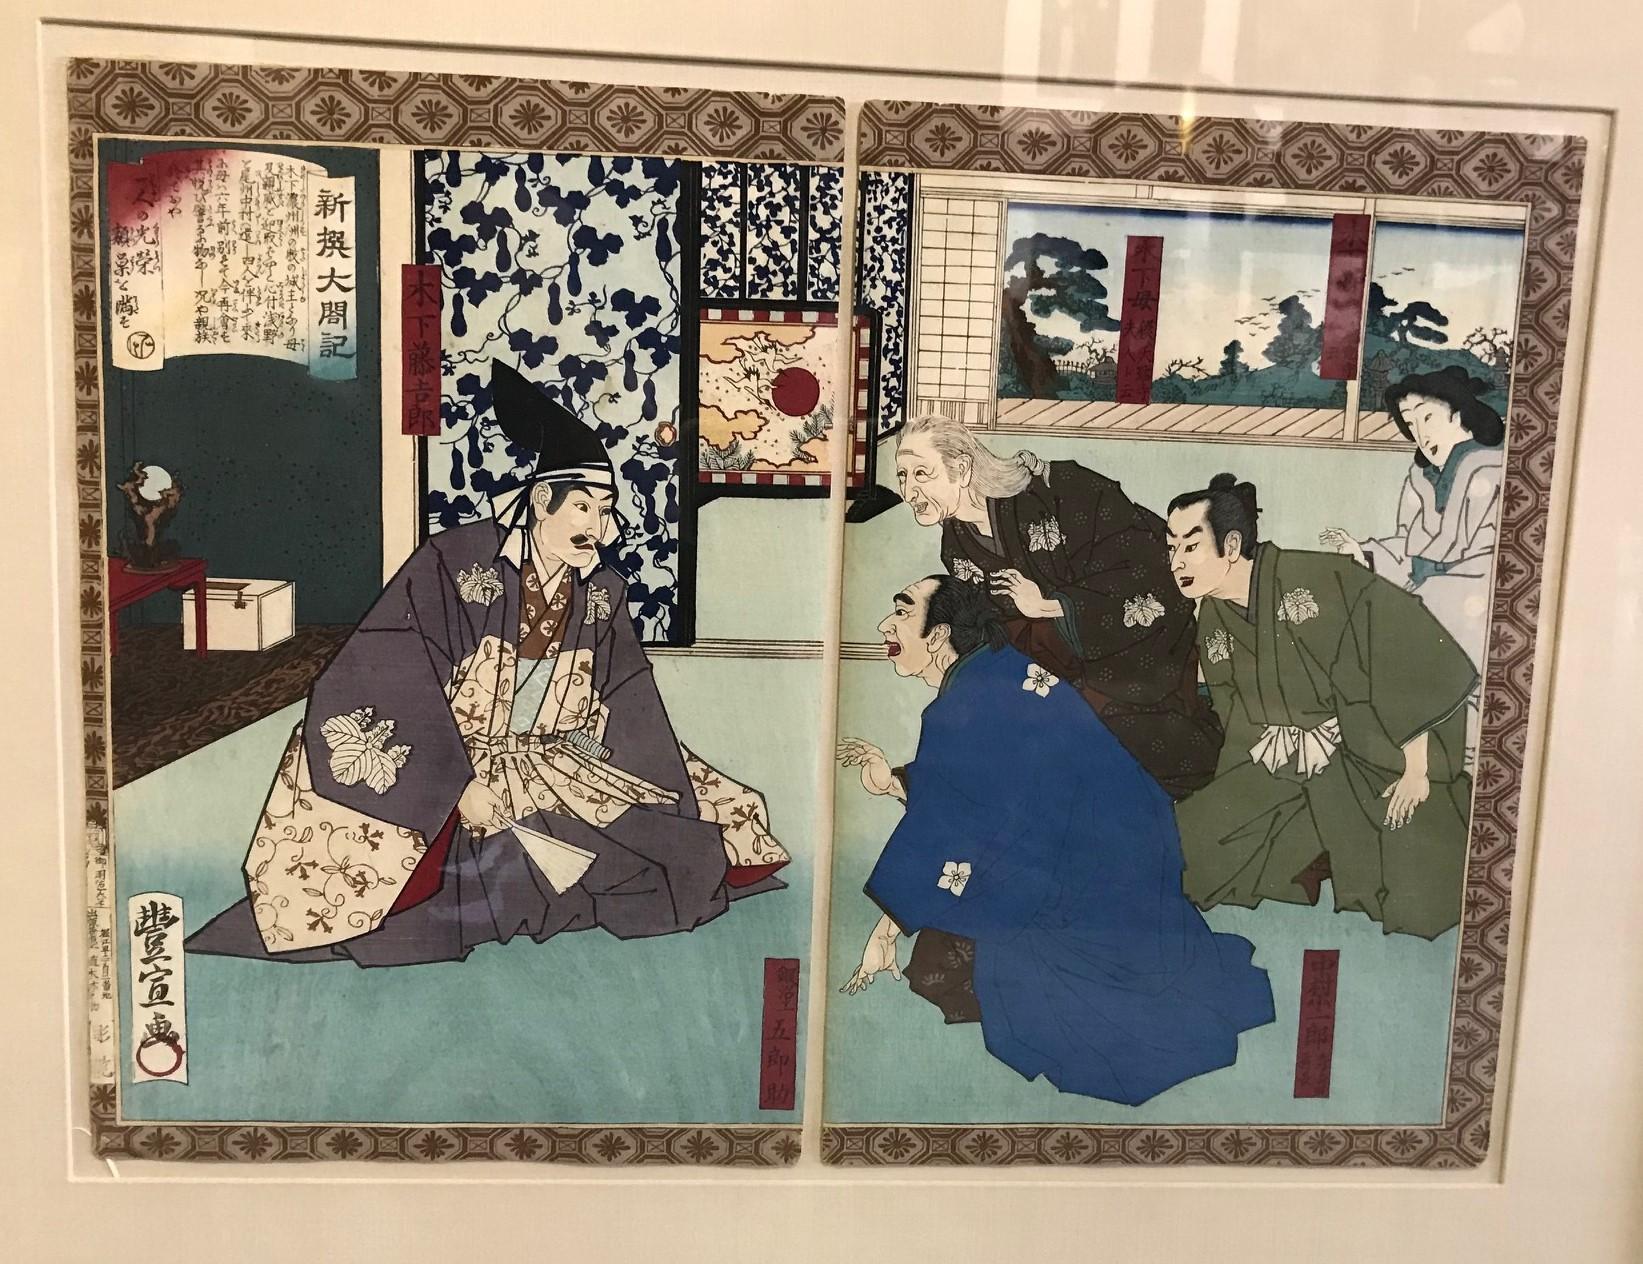 Une image classique du célèbre graveur japonais Utagawa Toyonobu, tirée de sa nouvelle série Histoire de Toyotomi Hideyoshi.

Très bonne impression, état et couleur. Encadré professionnellement par Jerry Solomon, encadreur de Los Angeles.